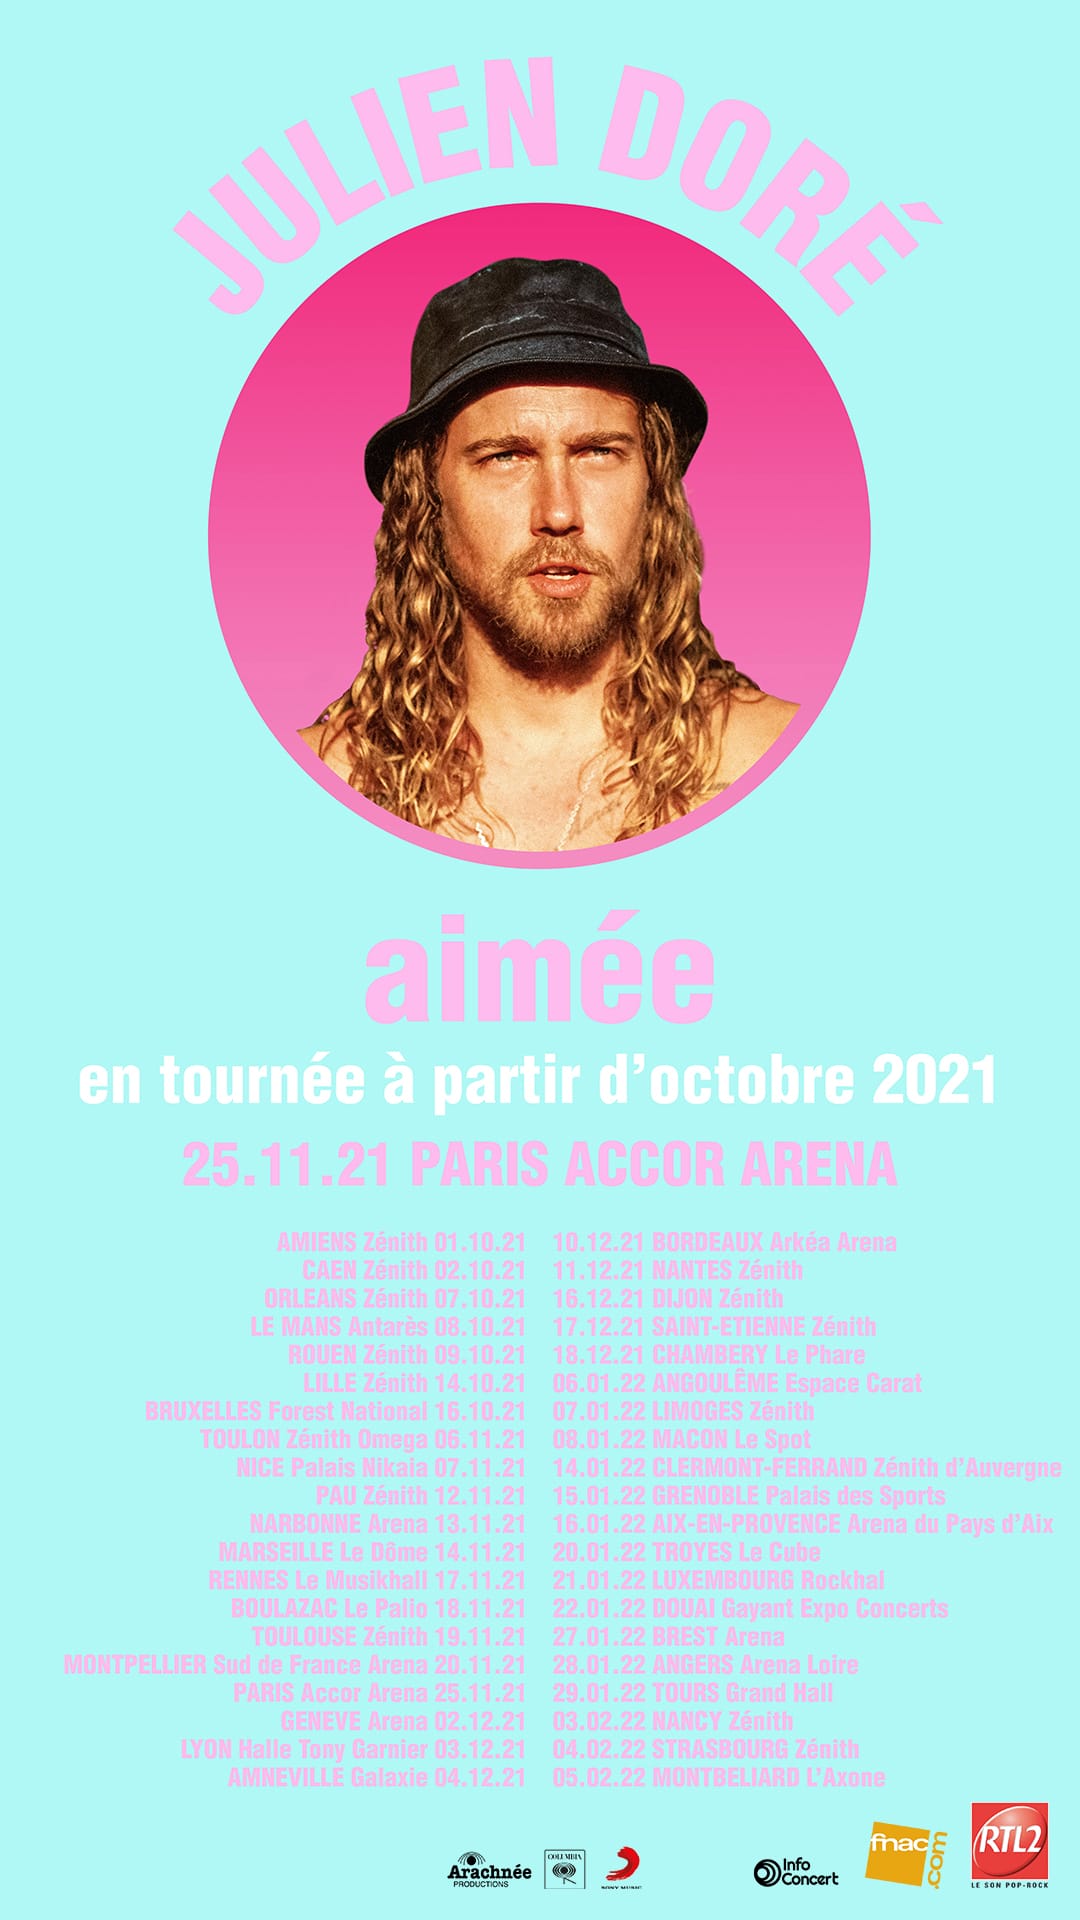 Dates prévues pour la tournée de Julien Doré à partir d'octobre 2021